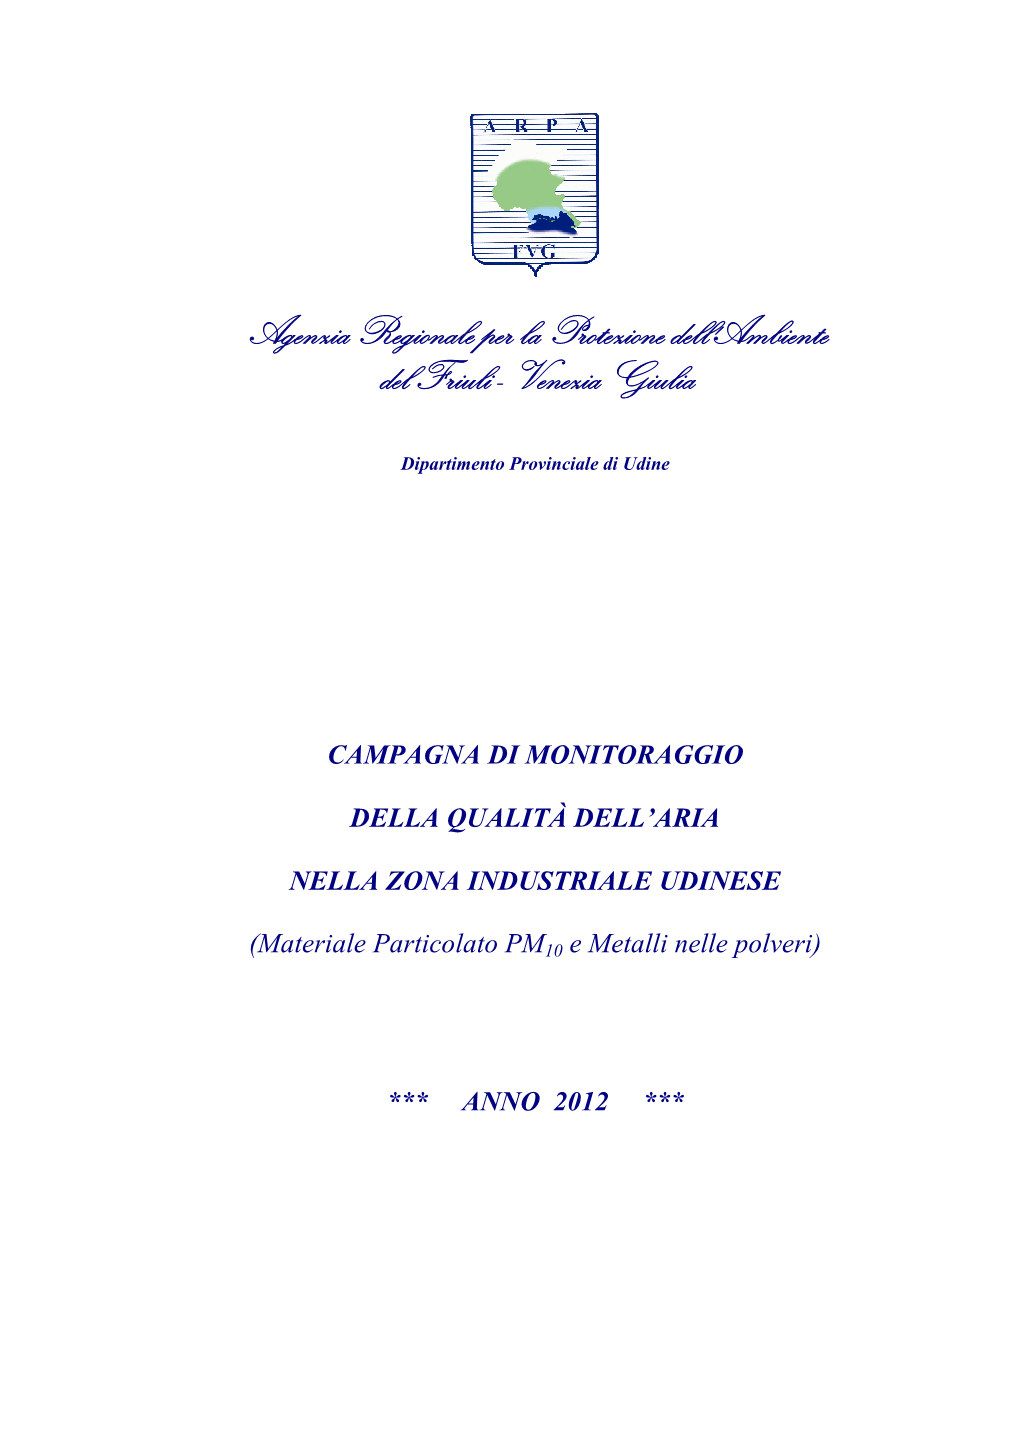 Agenzia Regionale Per La Protezione Dell'ambiente Del Friuli - Venezia Giulia